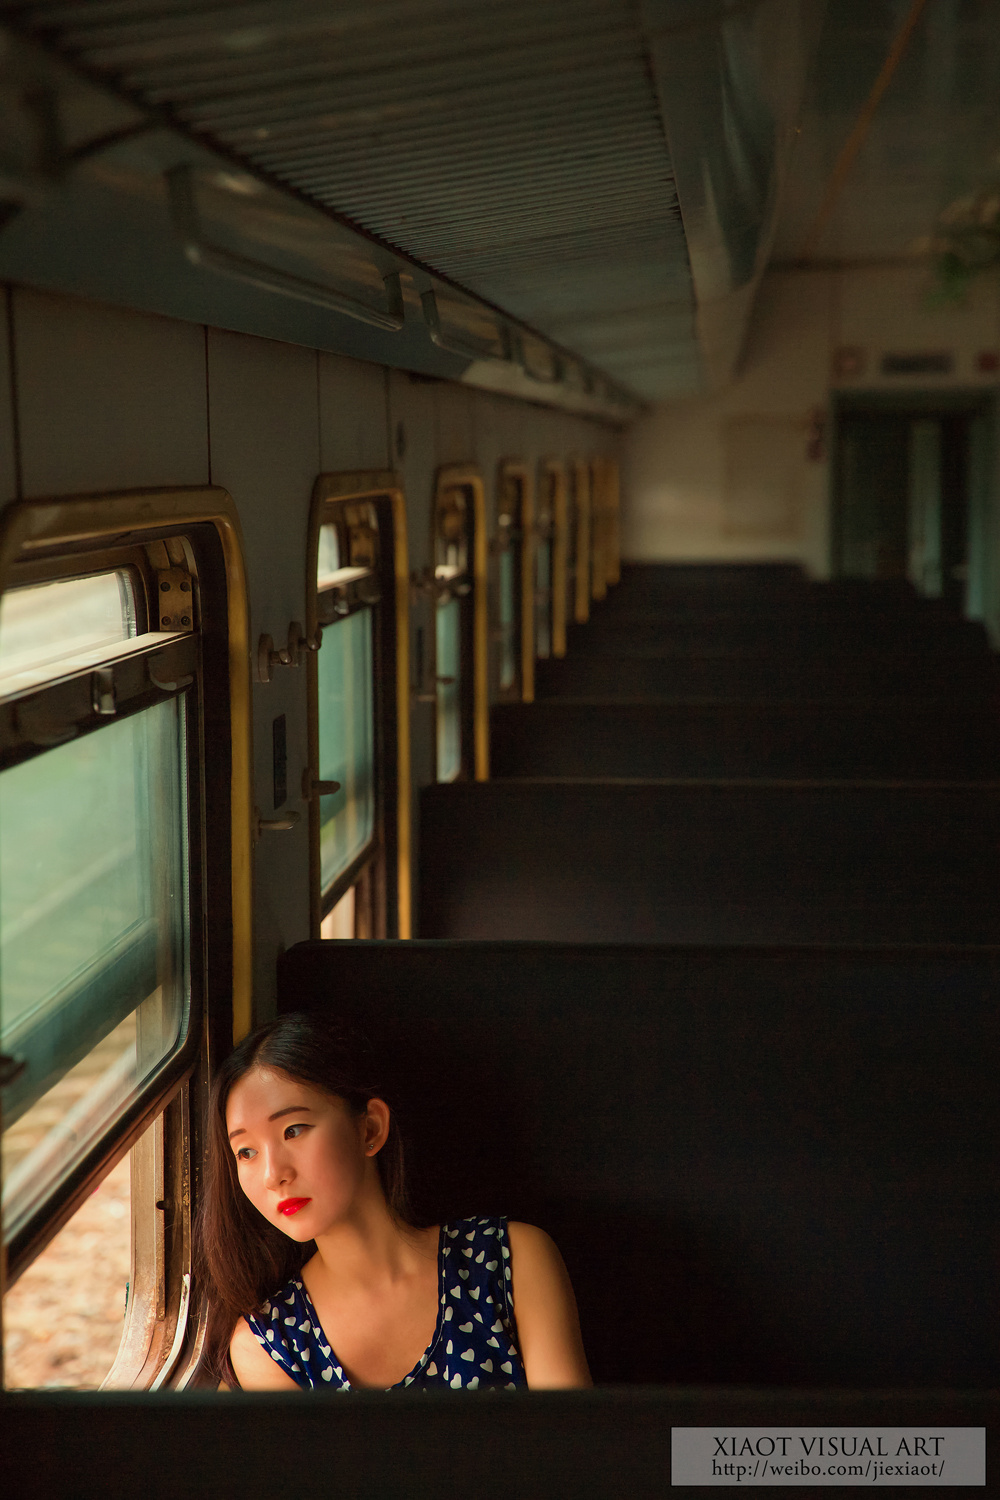 火车人像摄影作品图片